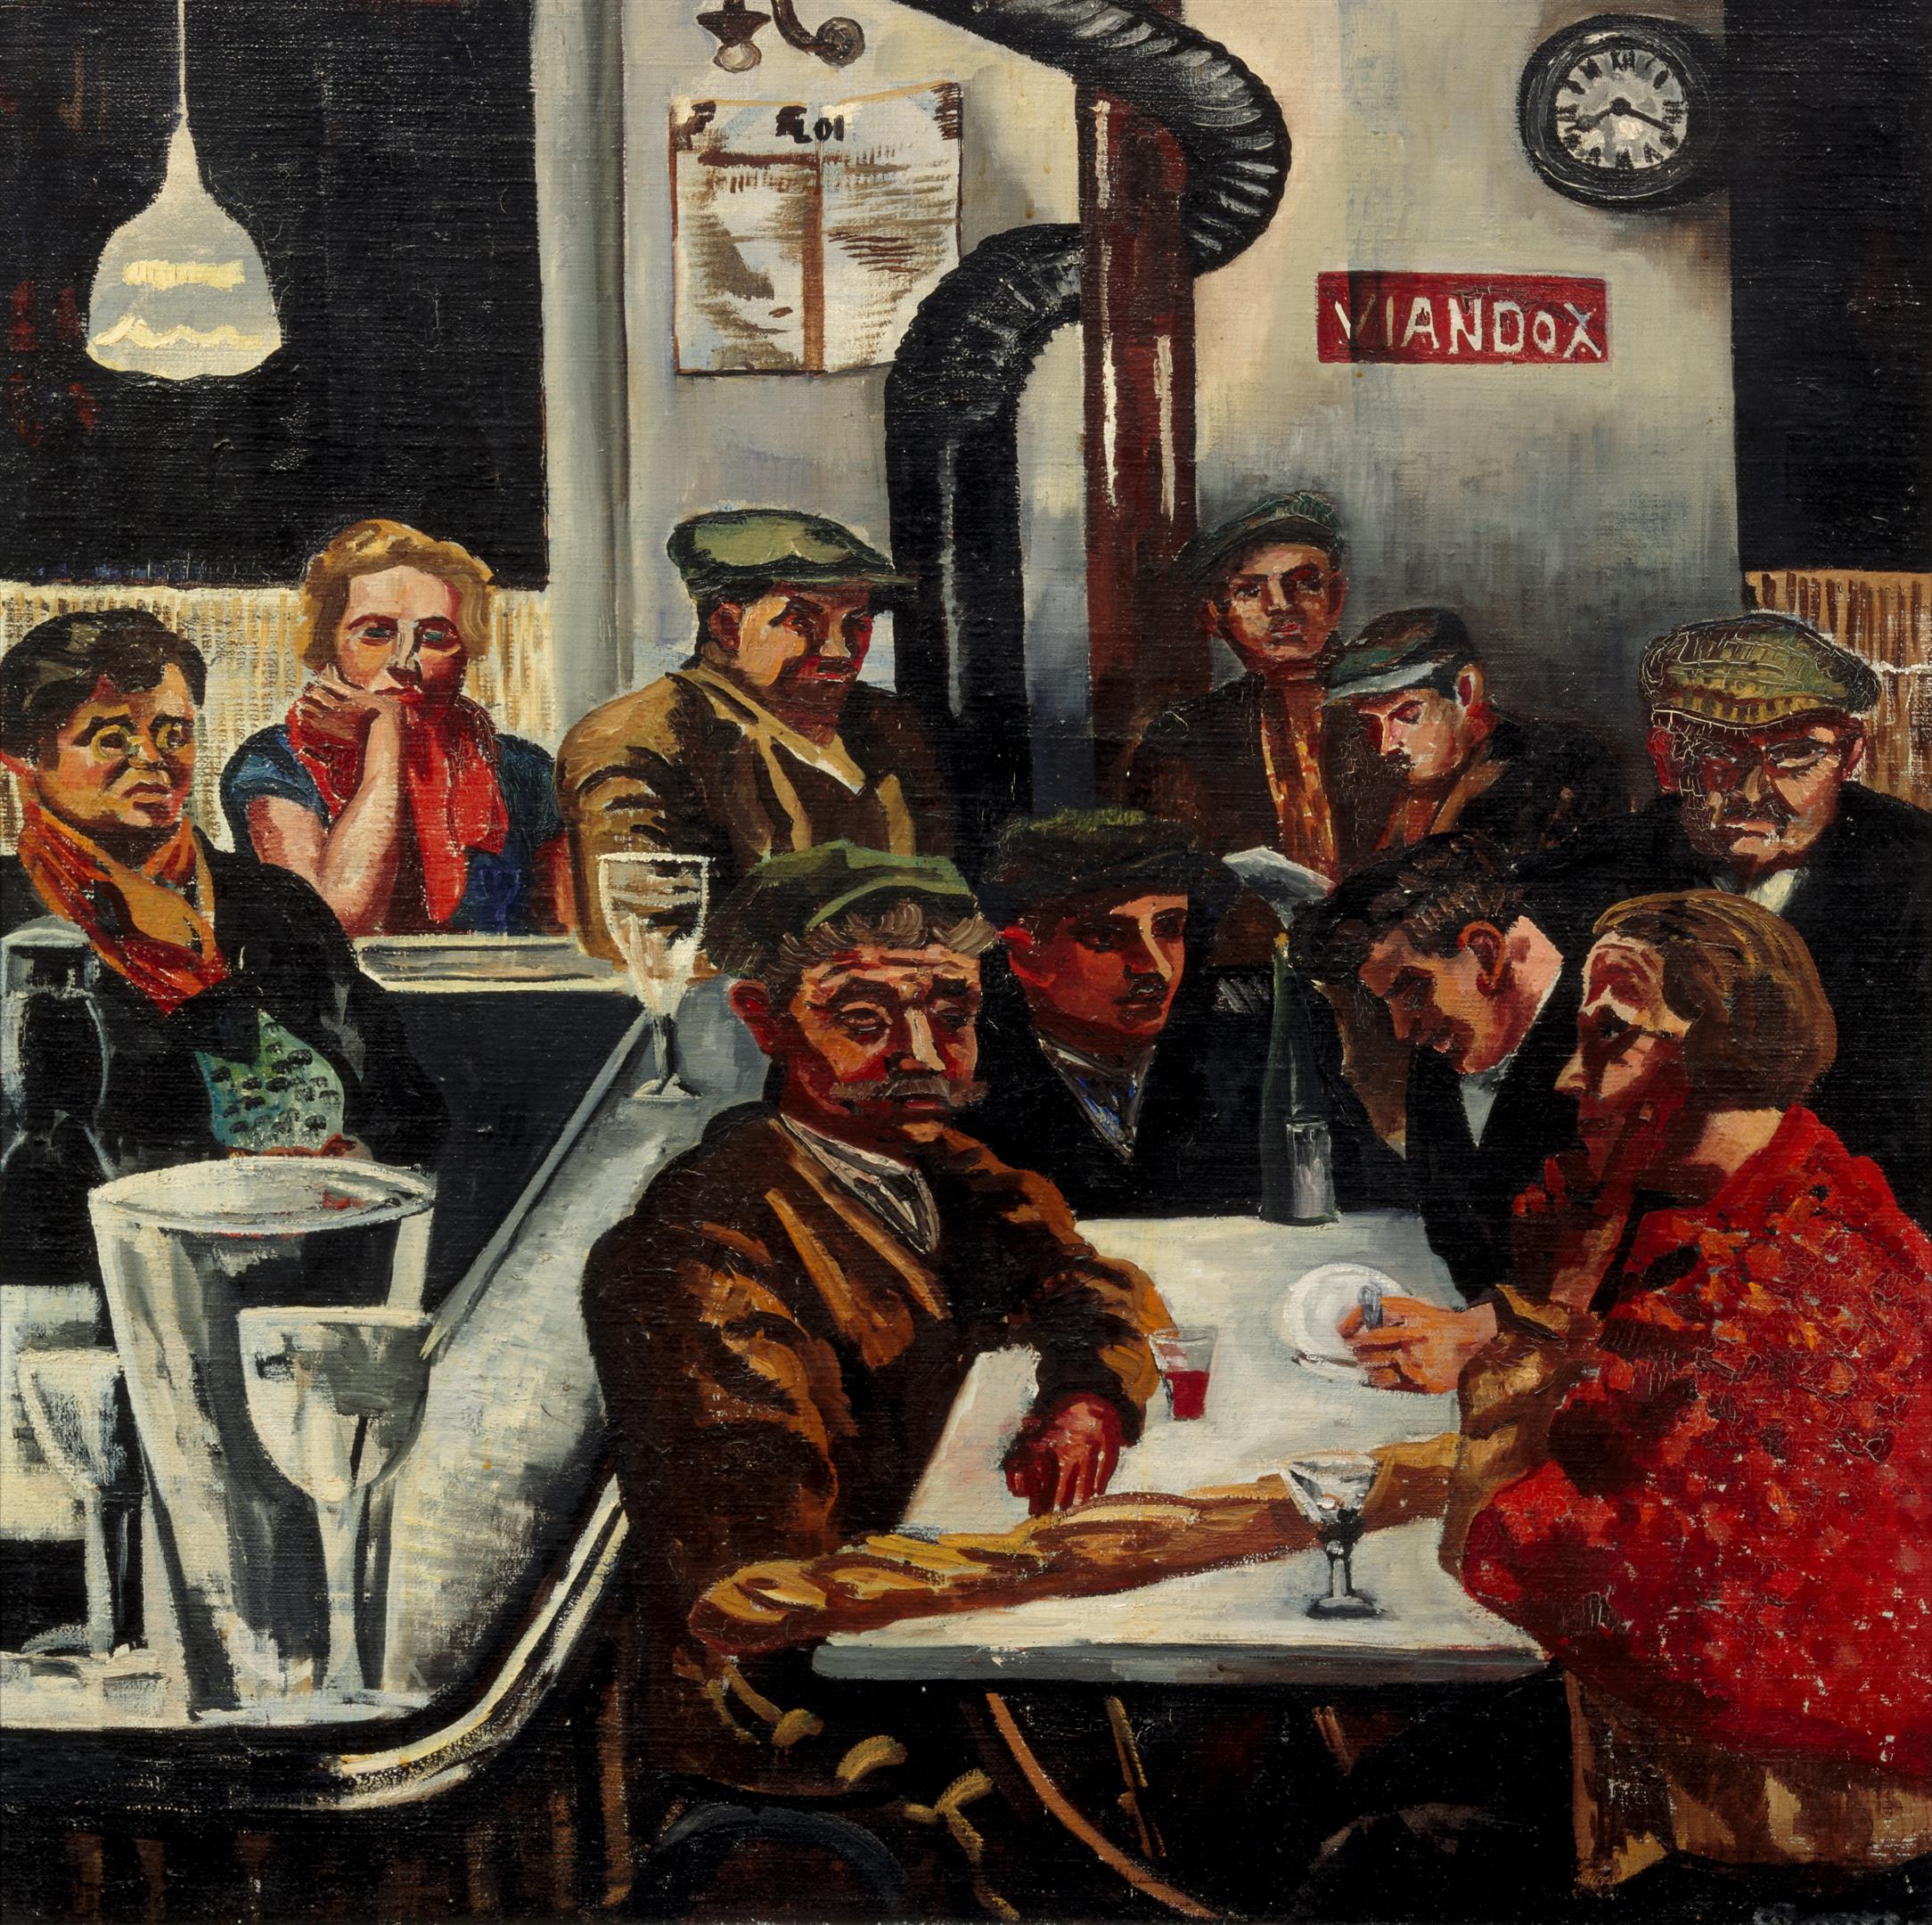 Als stagiaire werkte Marja Bosma in 1982 mee aan de tentoonstelling Charley Toorop 1891-1955 waar ook het schilderij Bistro uit 1931 was te zien.